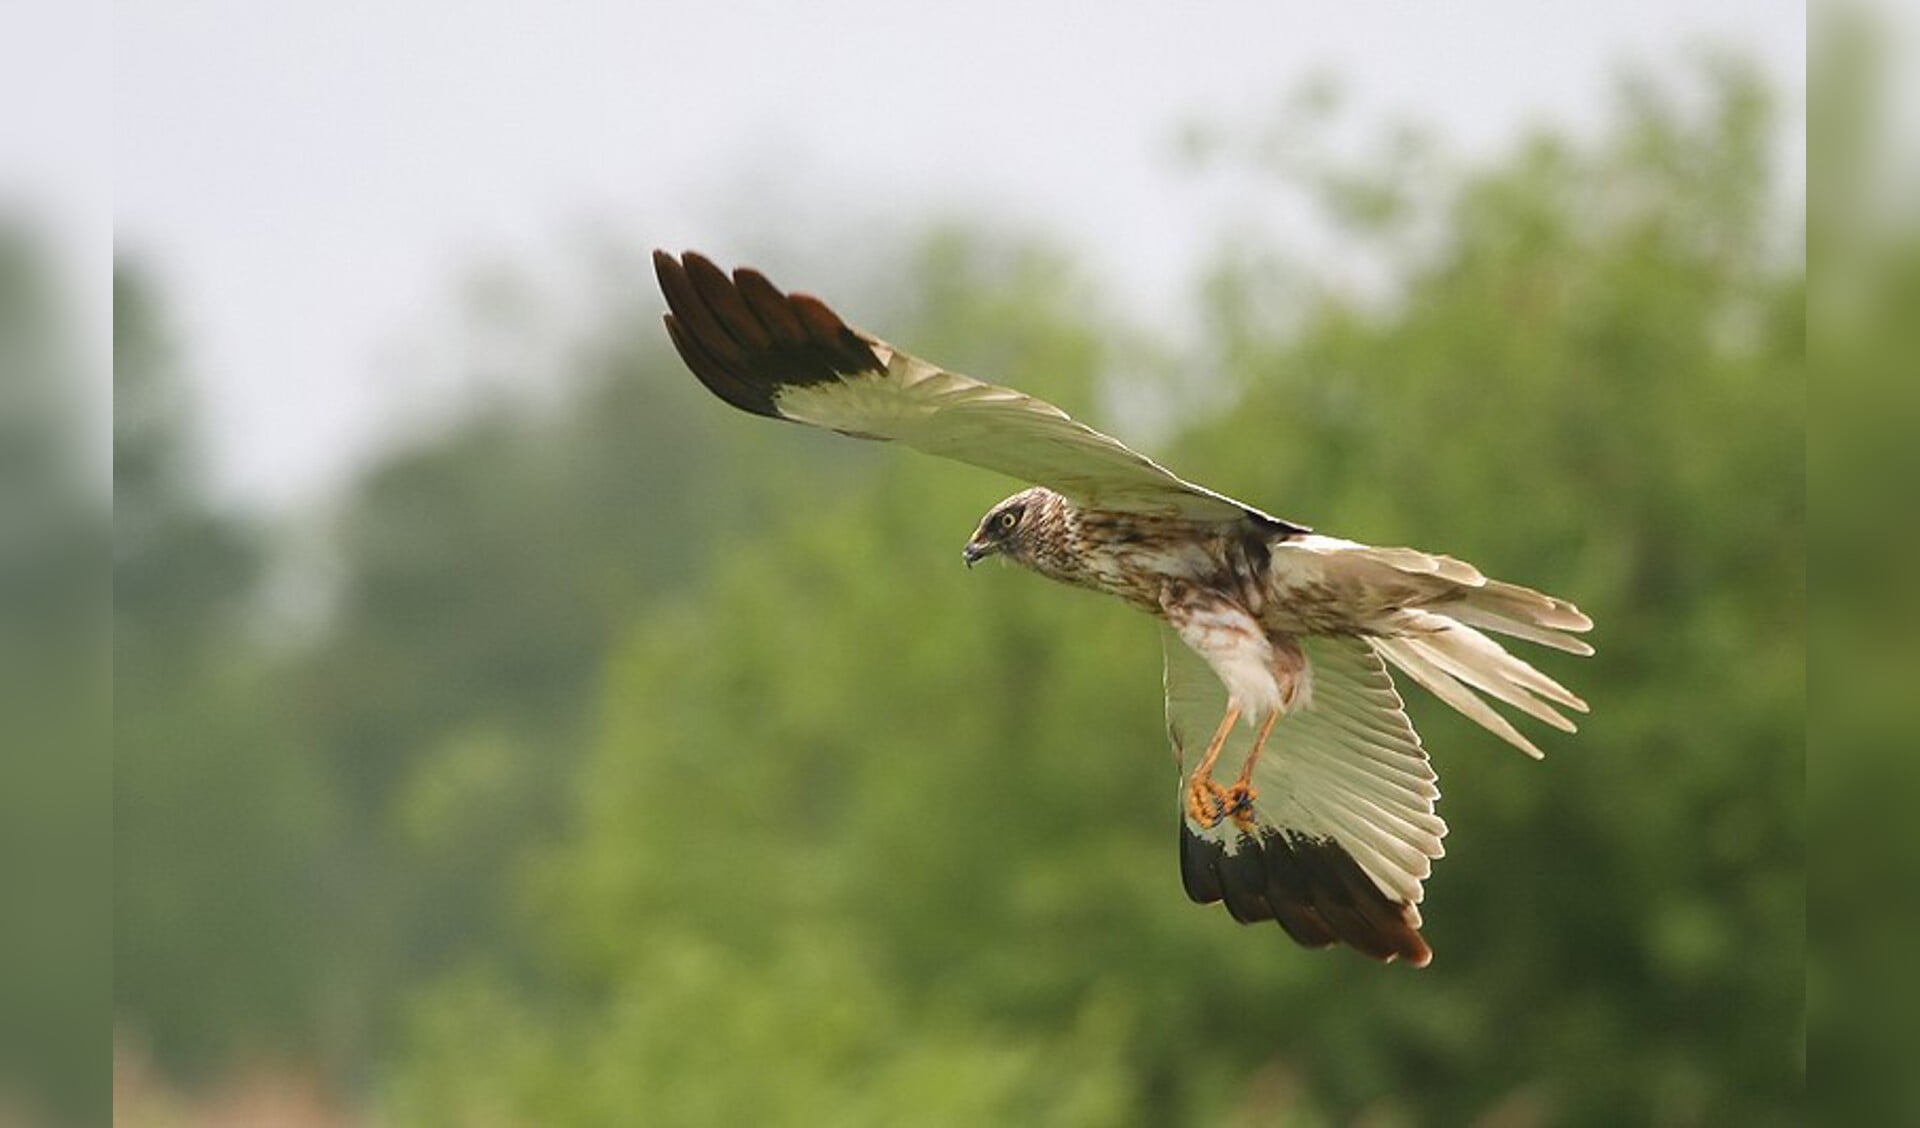 Wie aan de vaarexcursie Roofvogels meedoet, ziet misschien wel een bruine kiekendief. (Foto: Larry Kef)